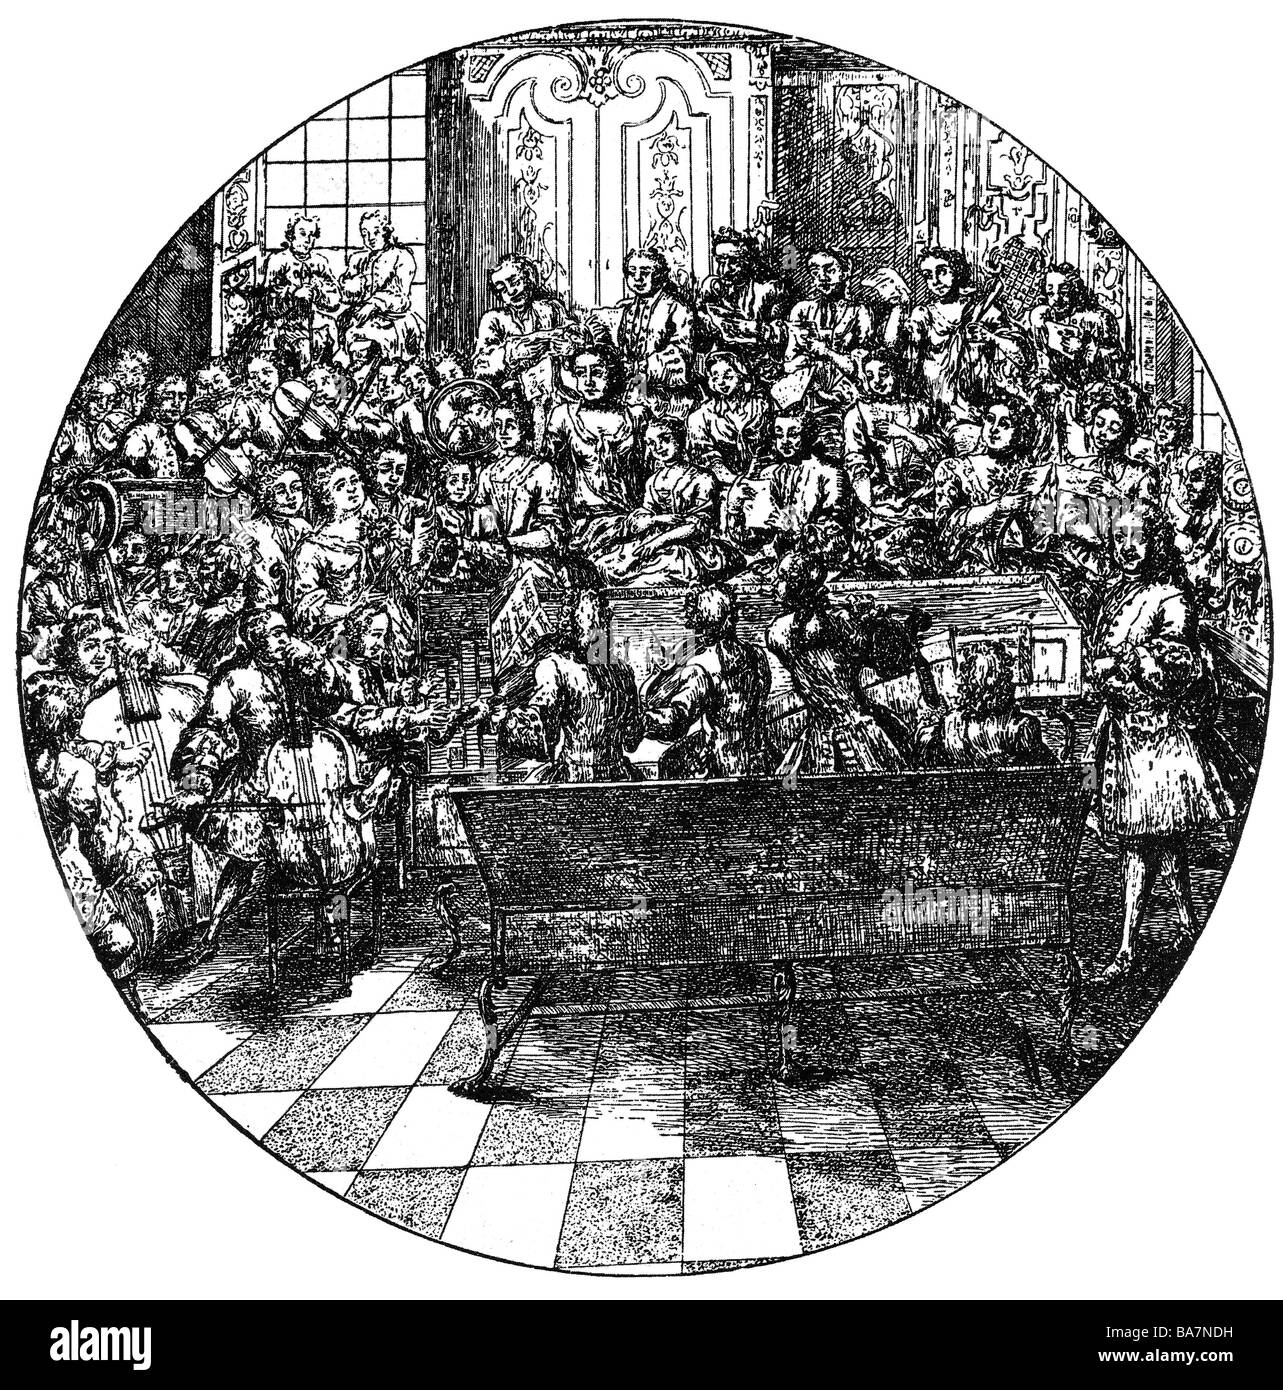 Händel, George Frederic, 23.2.1685 - 14.4.1759, compositor alemán, conduciendo, grabado en cobre, Inglaterra, siglo XVIII, , Copyright del artista no ha de ser borrado Foto de stock